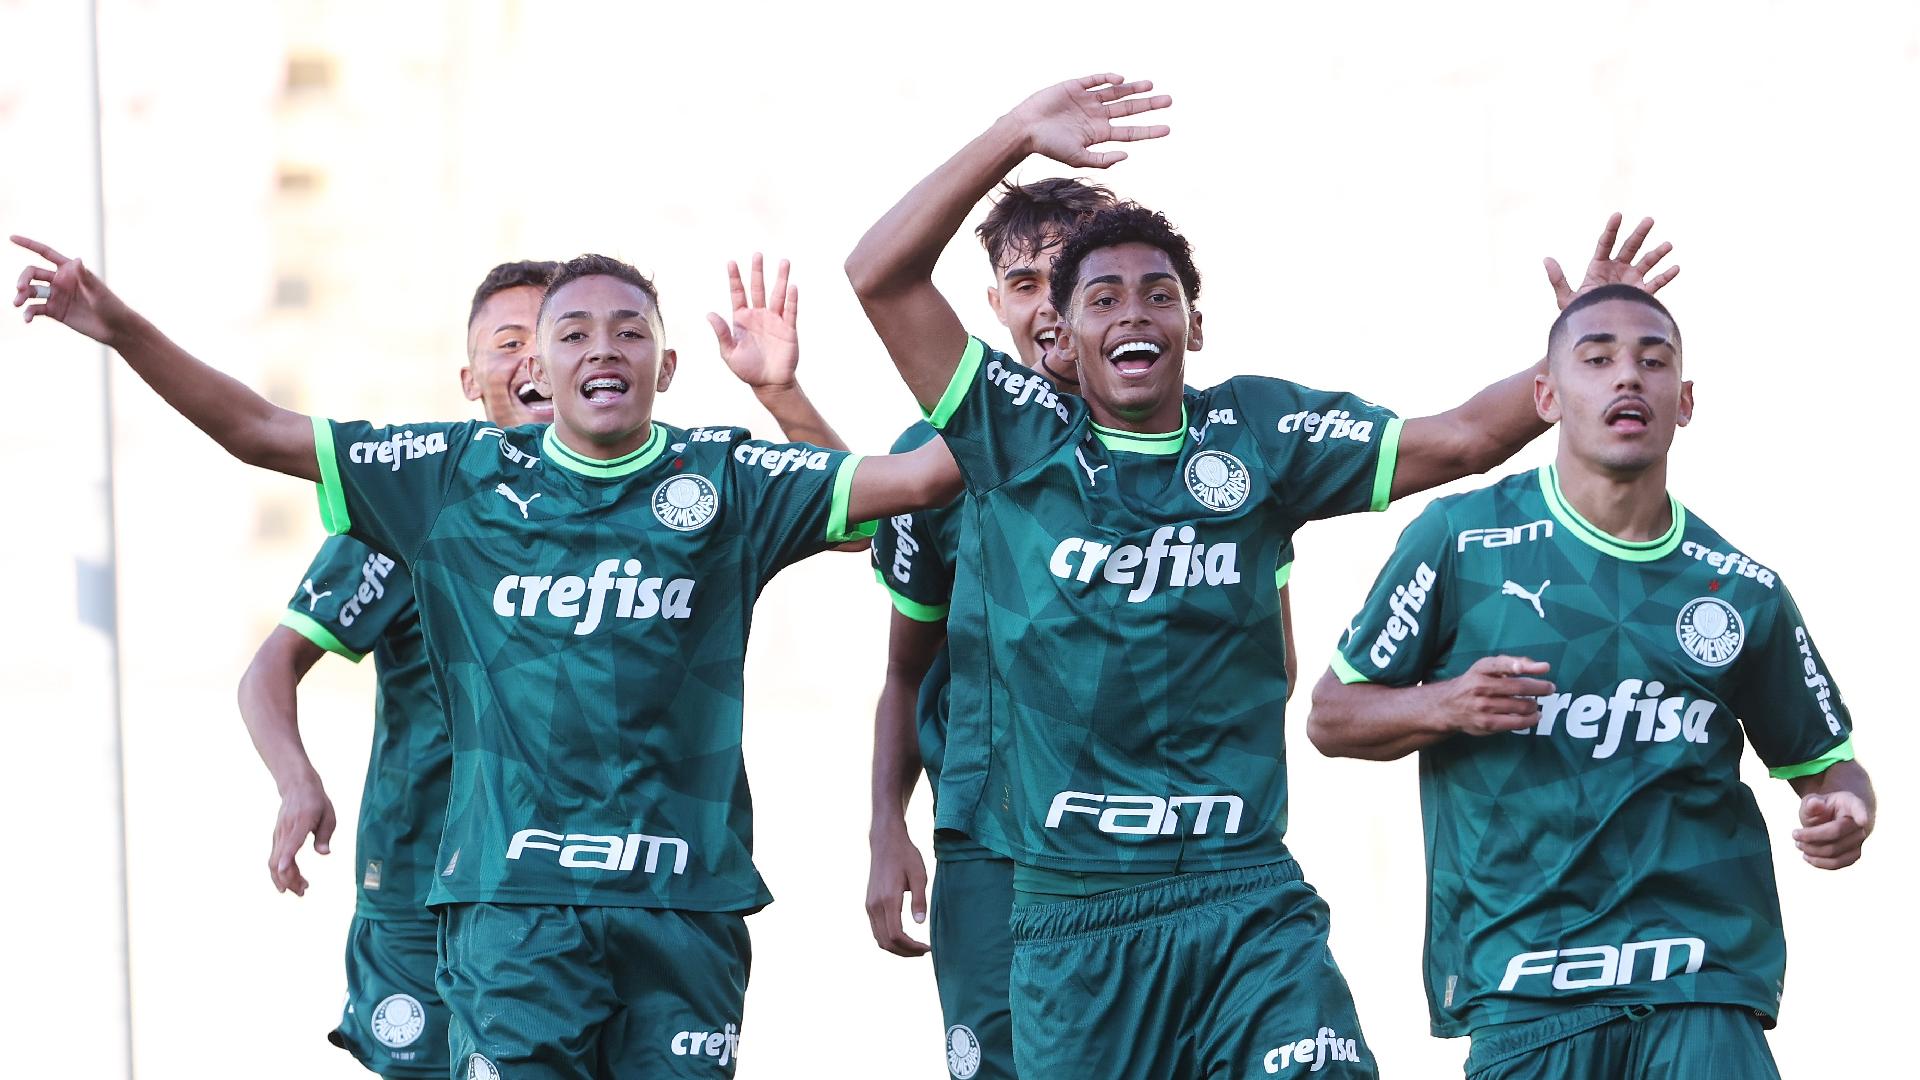 Palmeiras campeão mundial sub-17 - Vídeos - Gazeta Esportiva.com